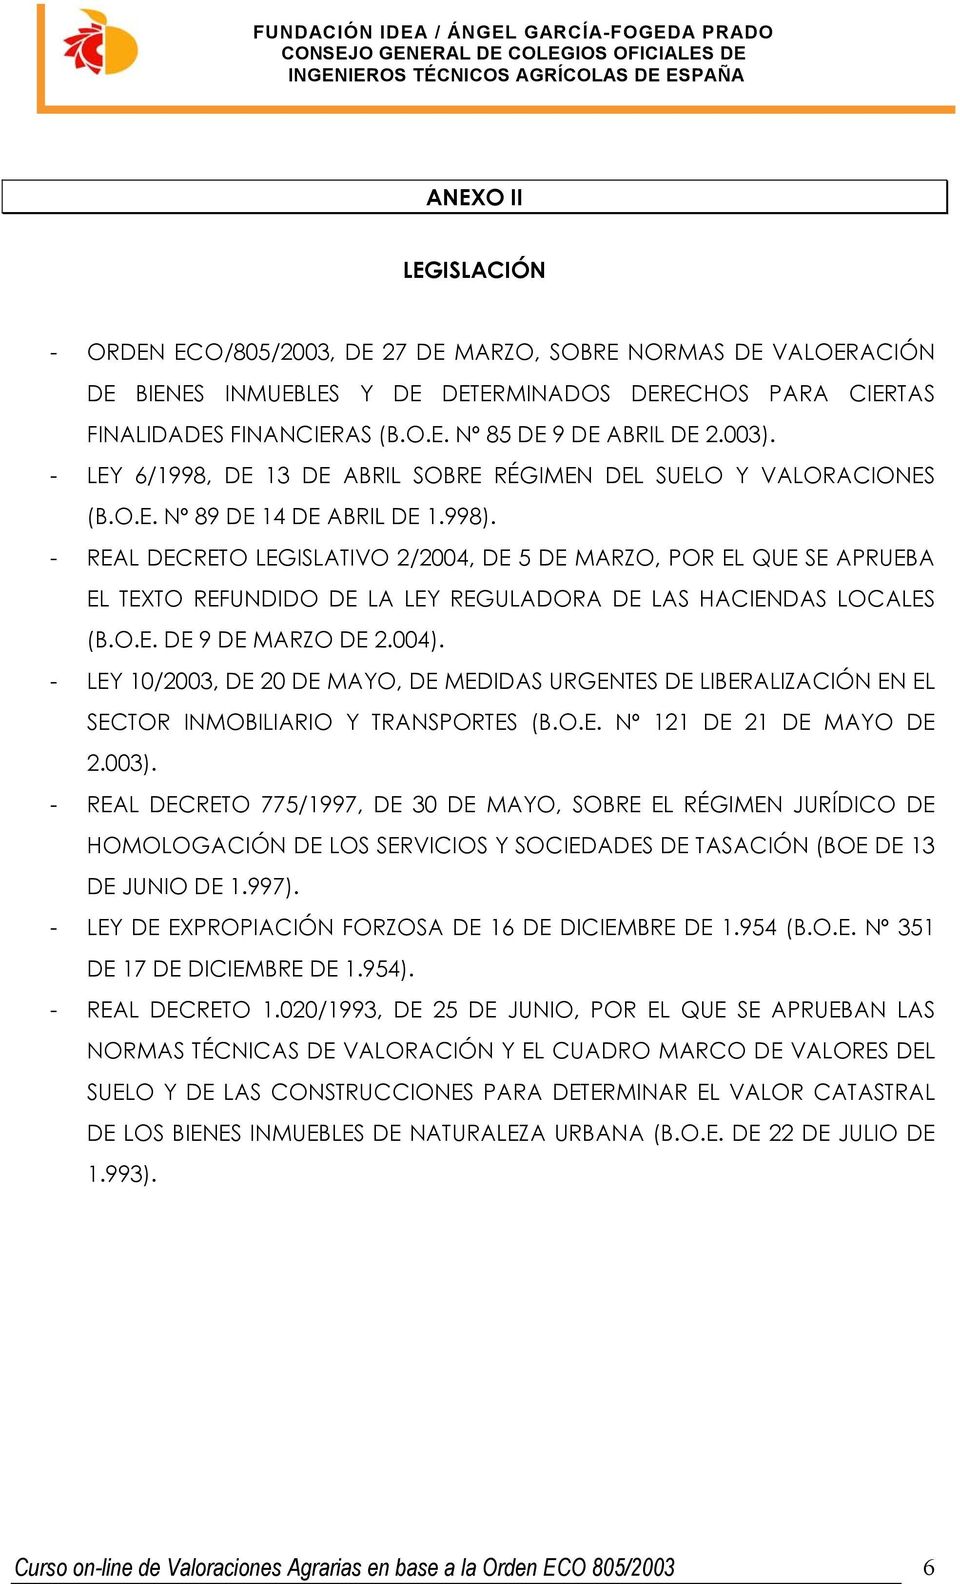 - REAL DECRETO LEGISLATIVO 2/2004, DE 5 DE MARZO, POR EL QUE SE APRUEBA EL TEXTO REFUNDIDO DE LA LEY REGULADORA DE LAS HACIENDAS LOCALES (B.O.E. DE 9 DE MARZO DE 2.004).